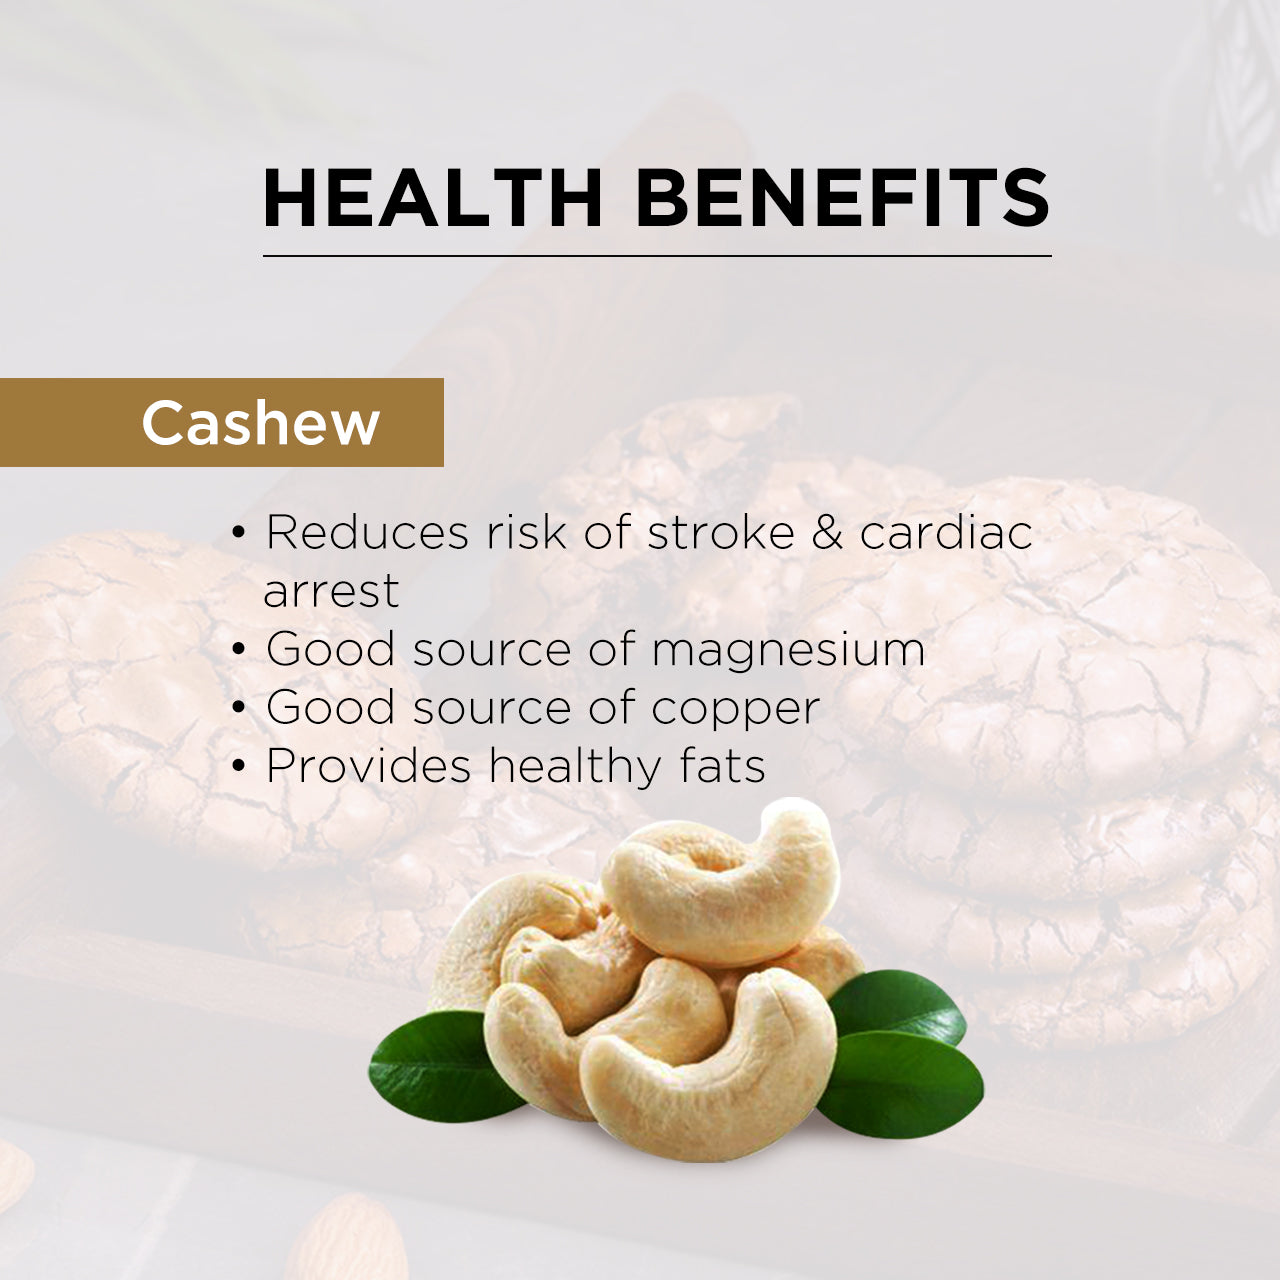 Cashew brookies